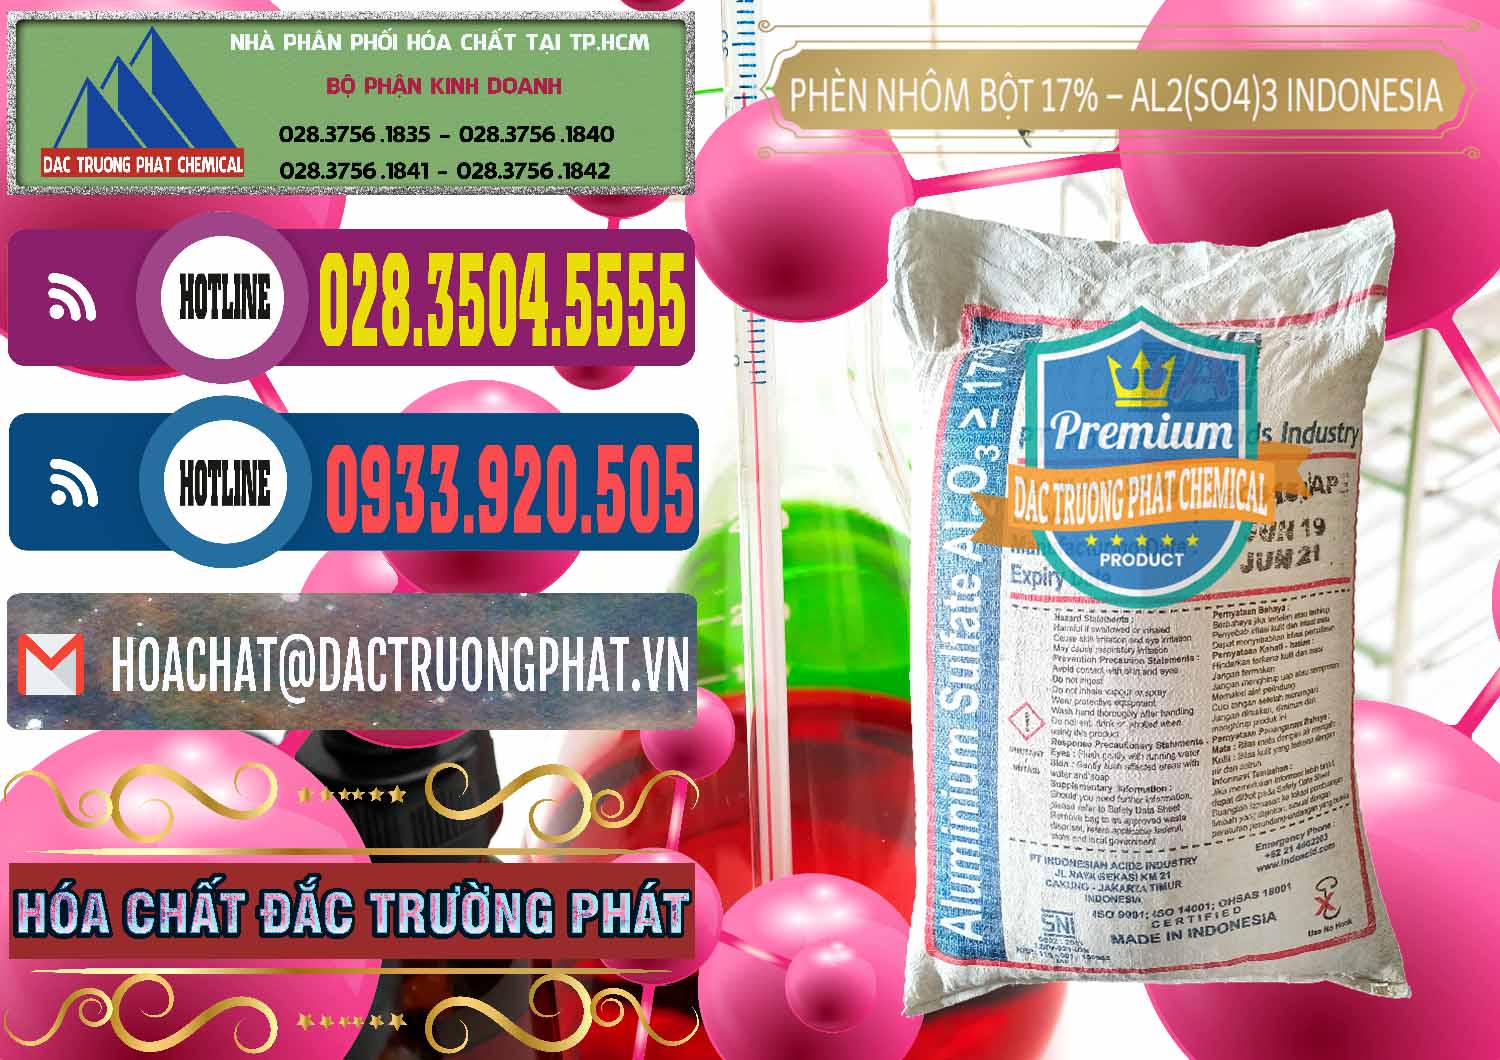 Công ty chuyên bán ( cung cấp ) Phèn Nhôm Bột - Al2(SO4)3 17% bao 25kg Indonesia - 0114 - Nhà nhập khẩu _ cung cấp hóa chất tại TP.HCM - muabanhoachat.com.vn